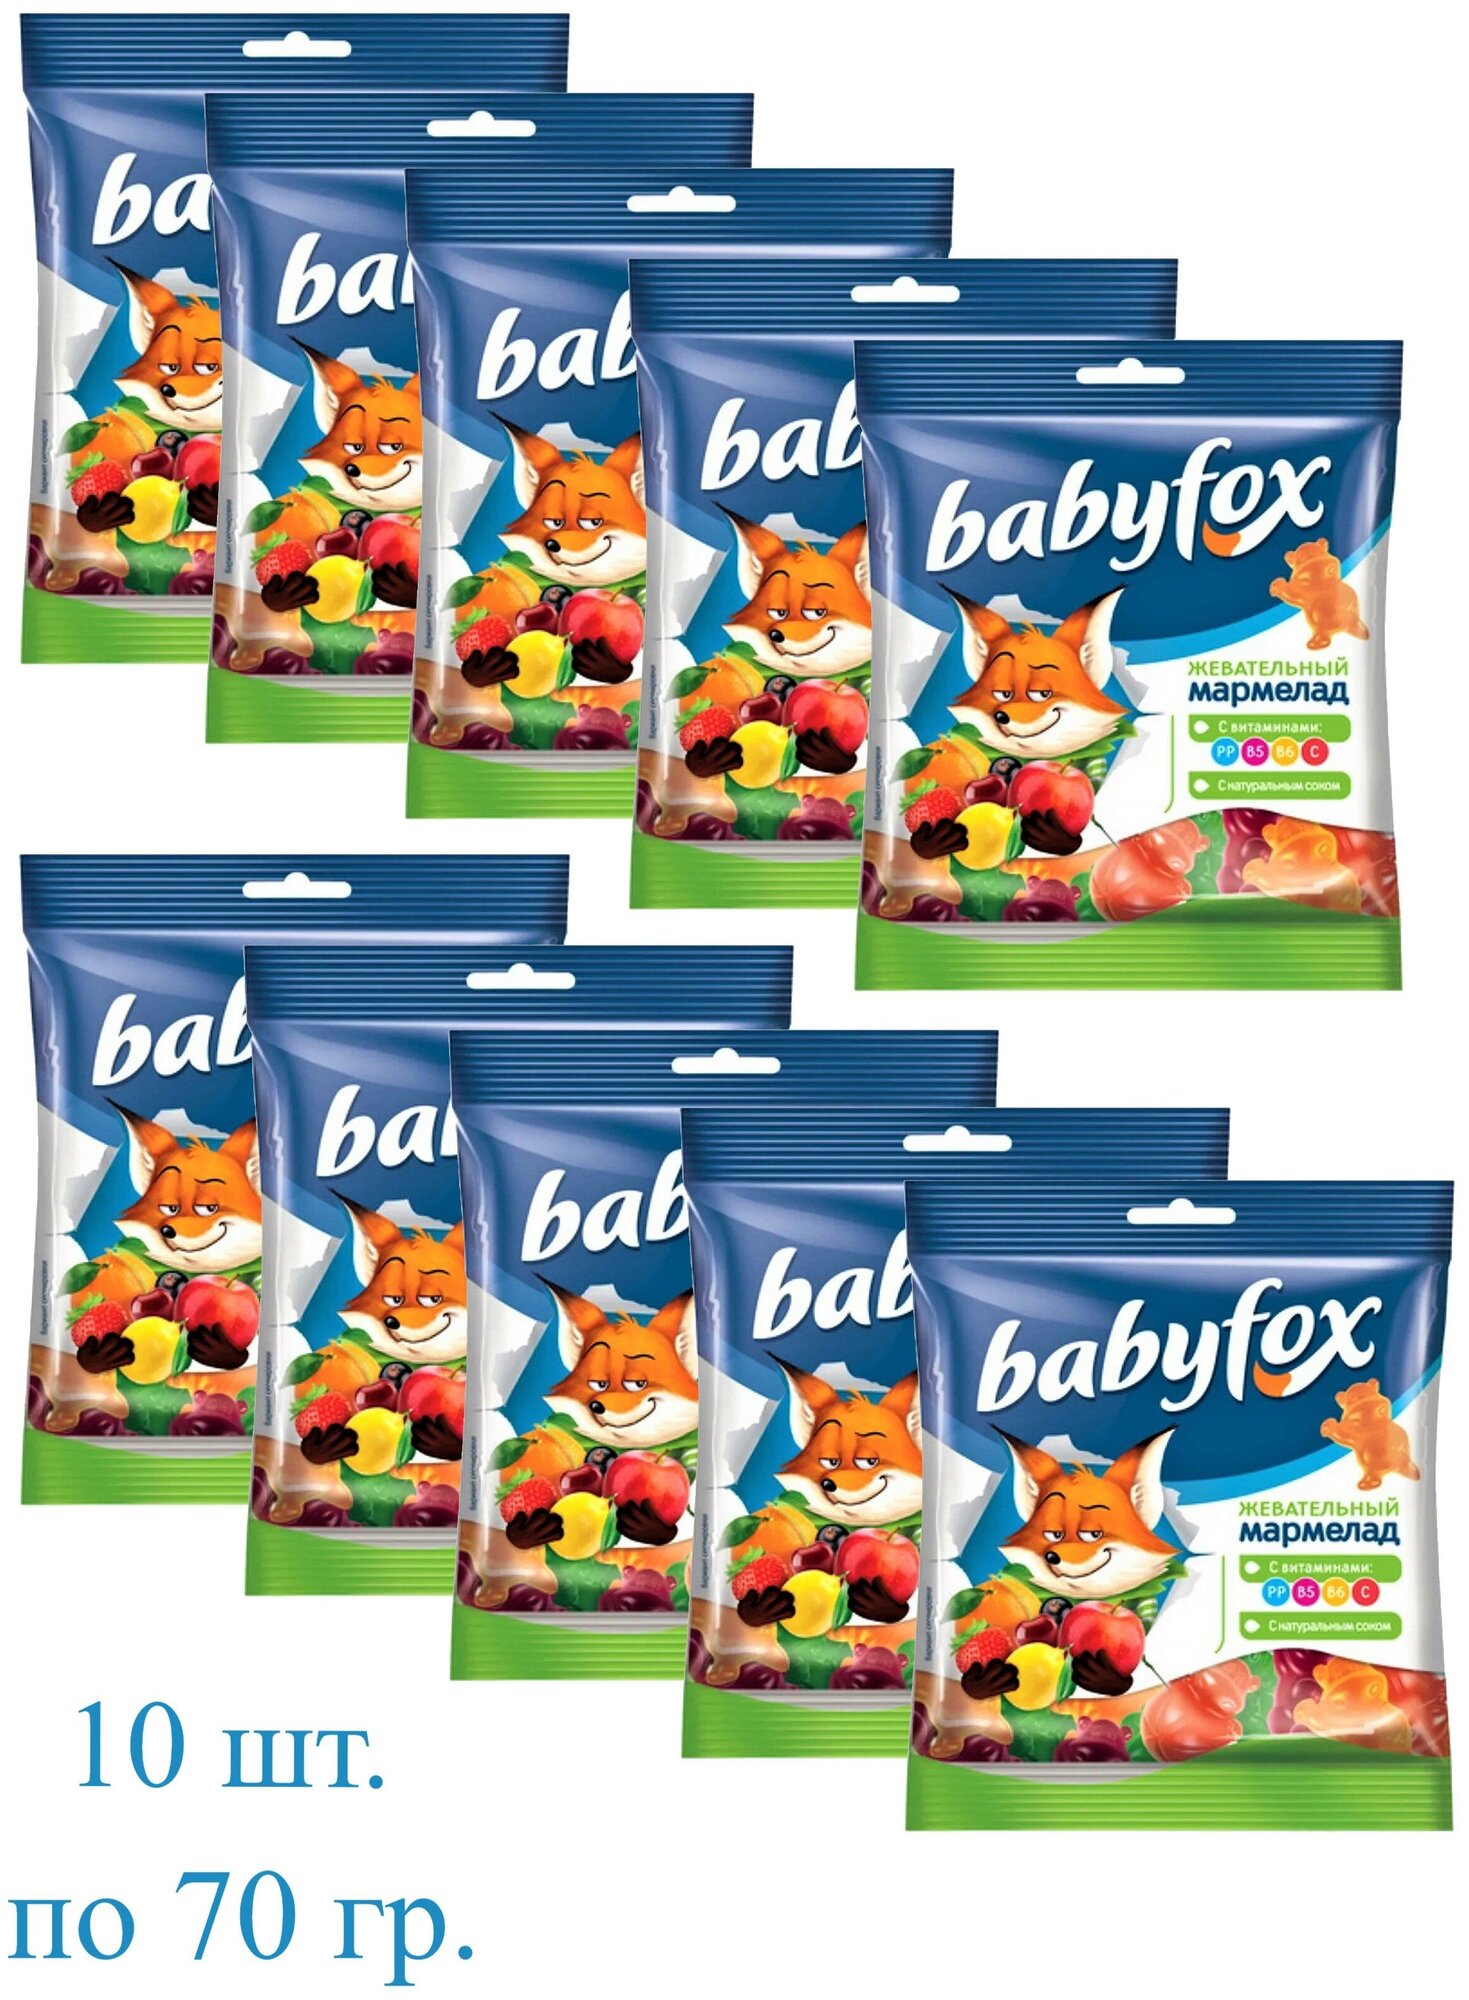 Мармелад KDV BabyFox жевательный с соком ягод и фруктовa в форме бегемотов, 10 шт. по 70 гр